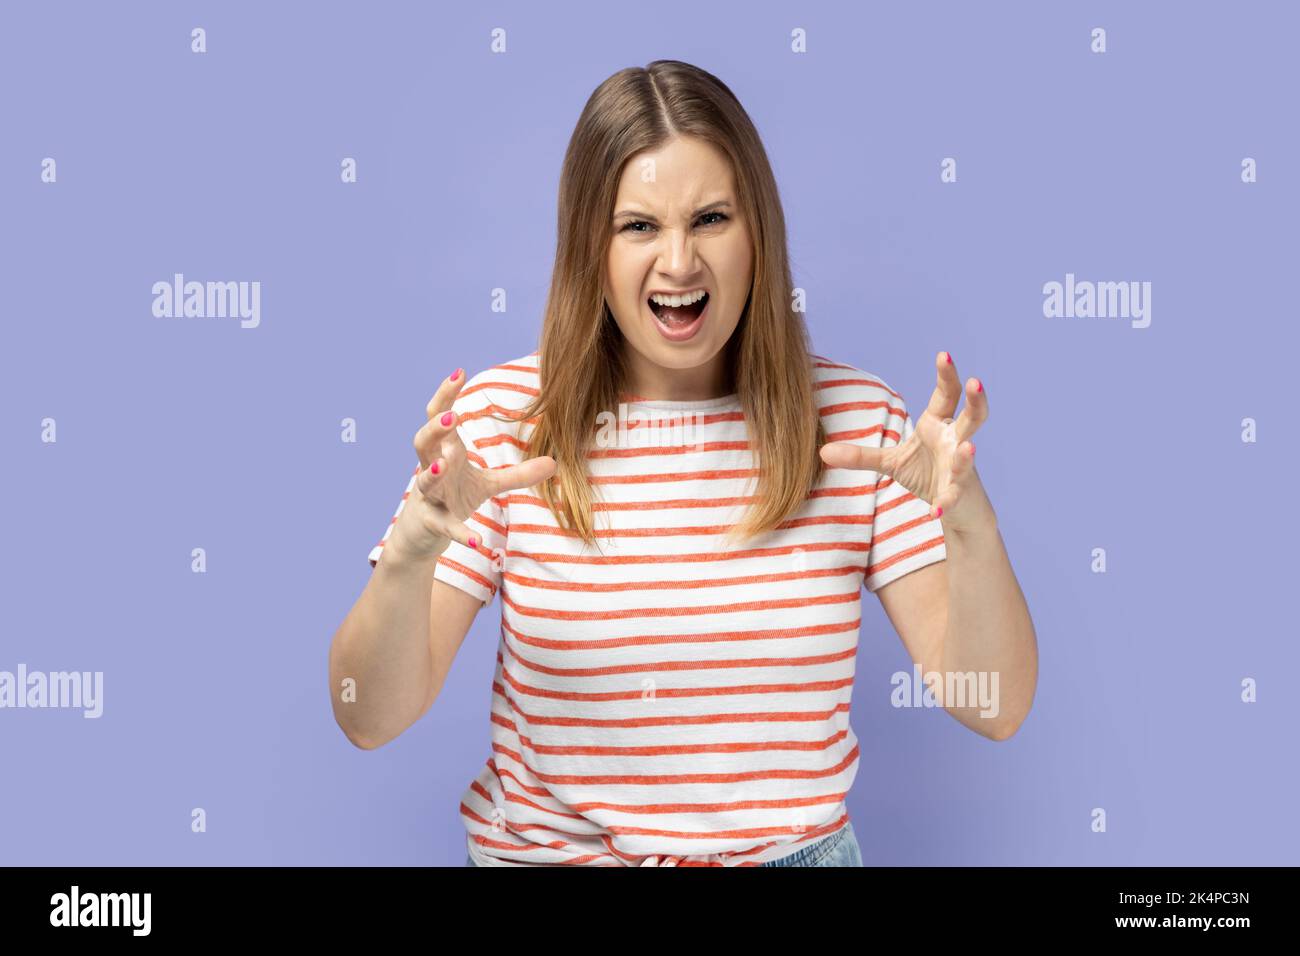 Porträt einer wütenden jungen blonden Frau mit gestreiftem T-Shirt, das aggressive Emotionen ausdrückt, die erhobenen Arme hebt und vor Hass und Wut schreit. Innenaufnahme des Studios isoliert auf violettem Hintergrund. Stockfoto